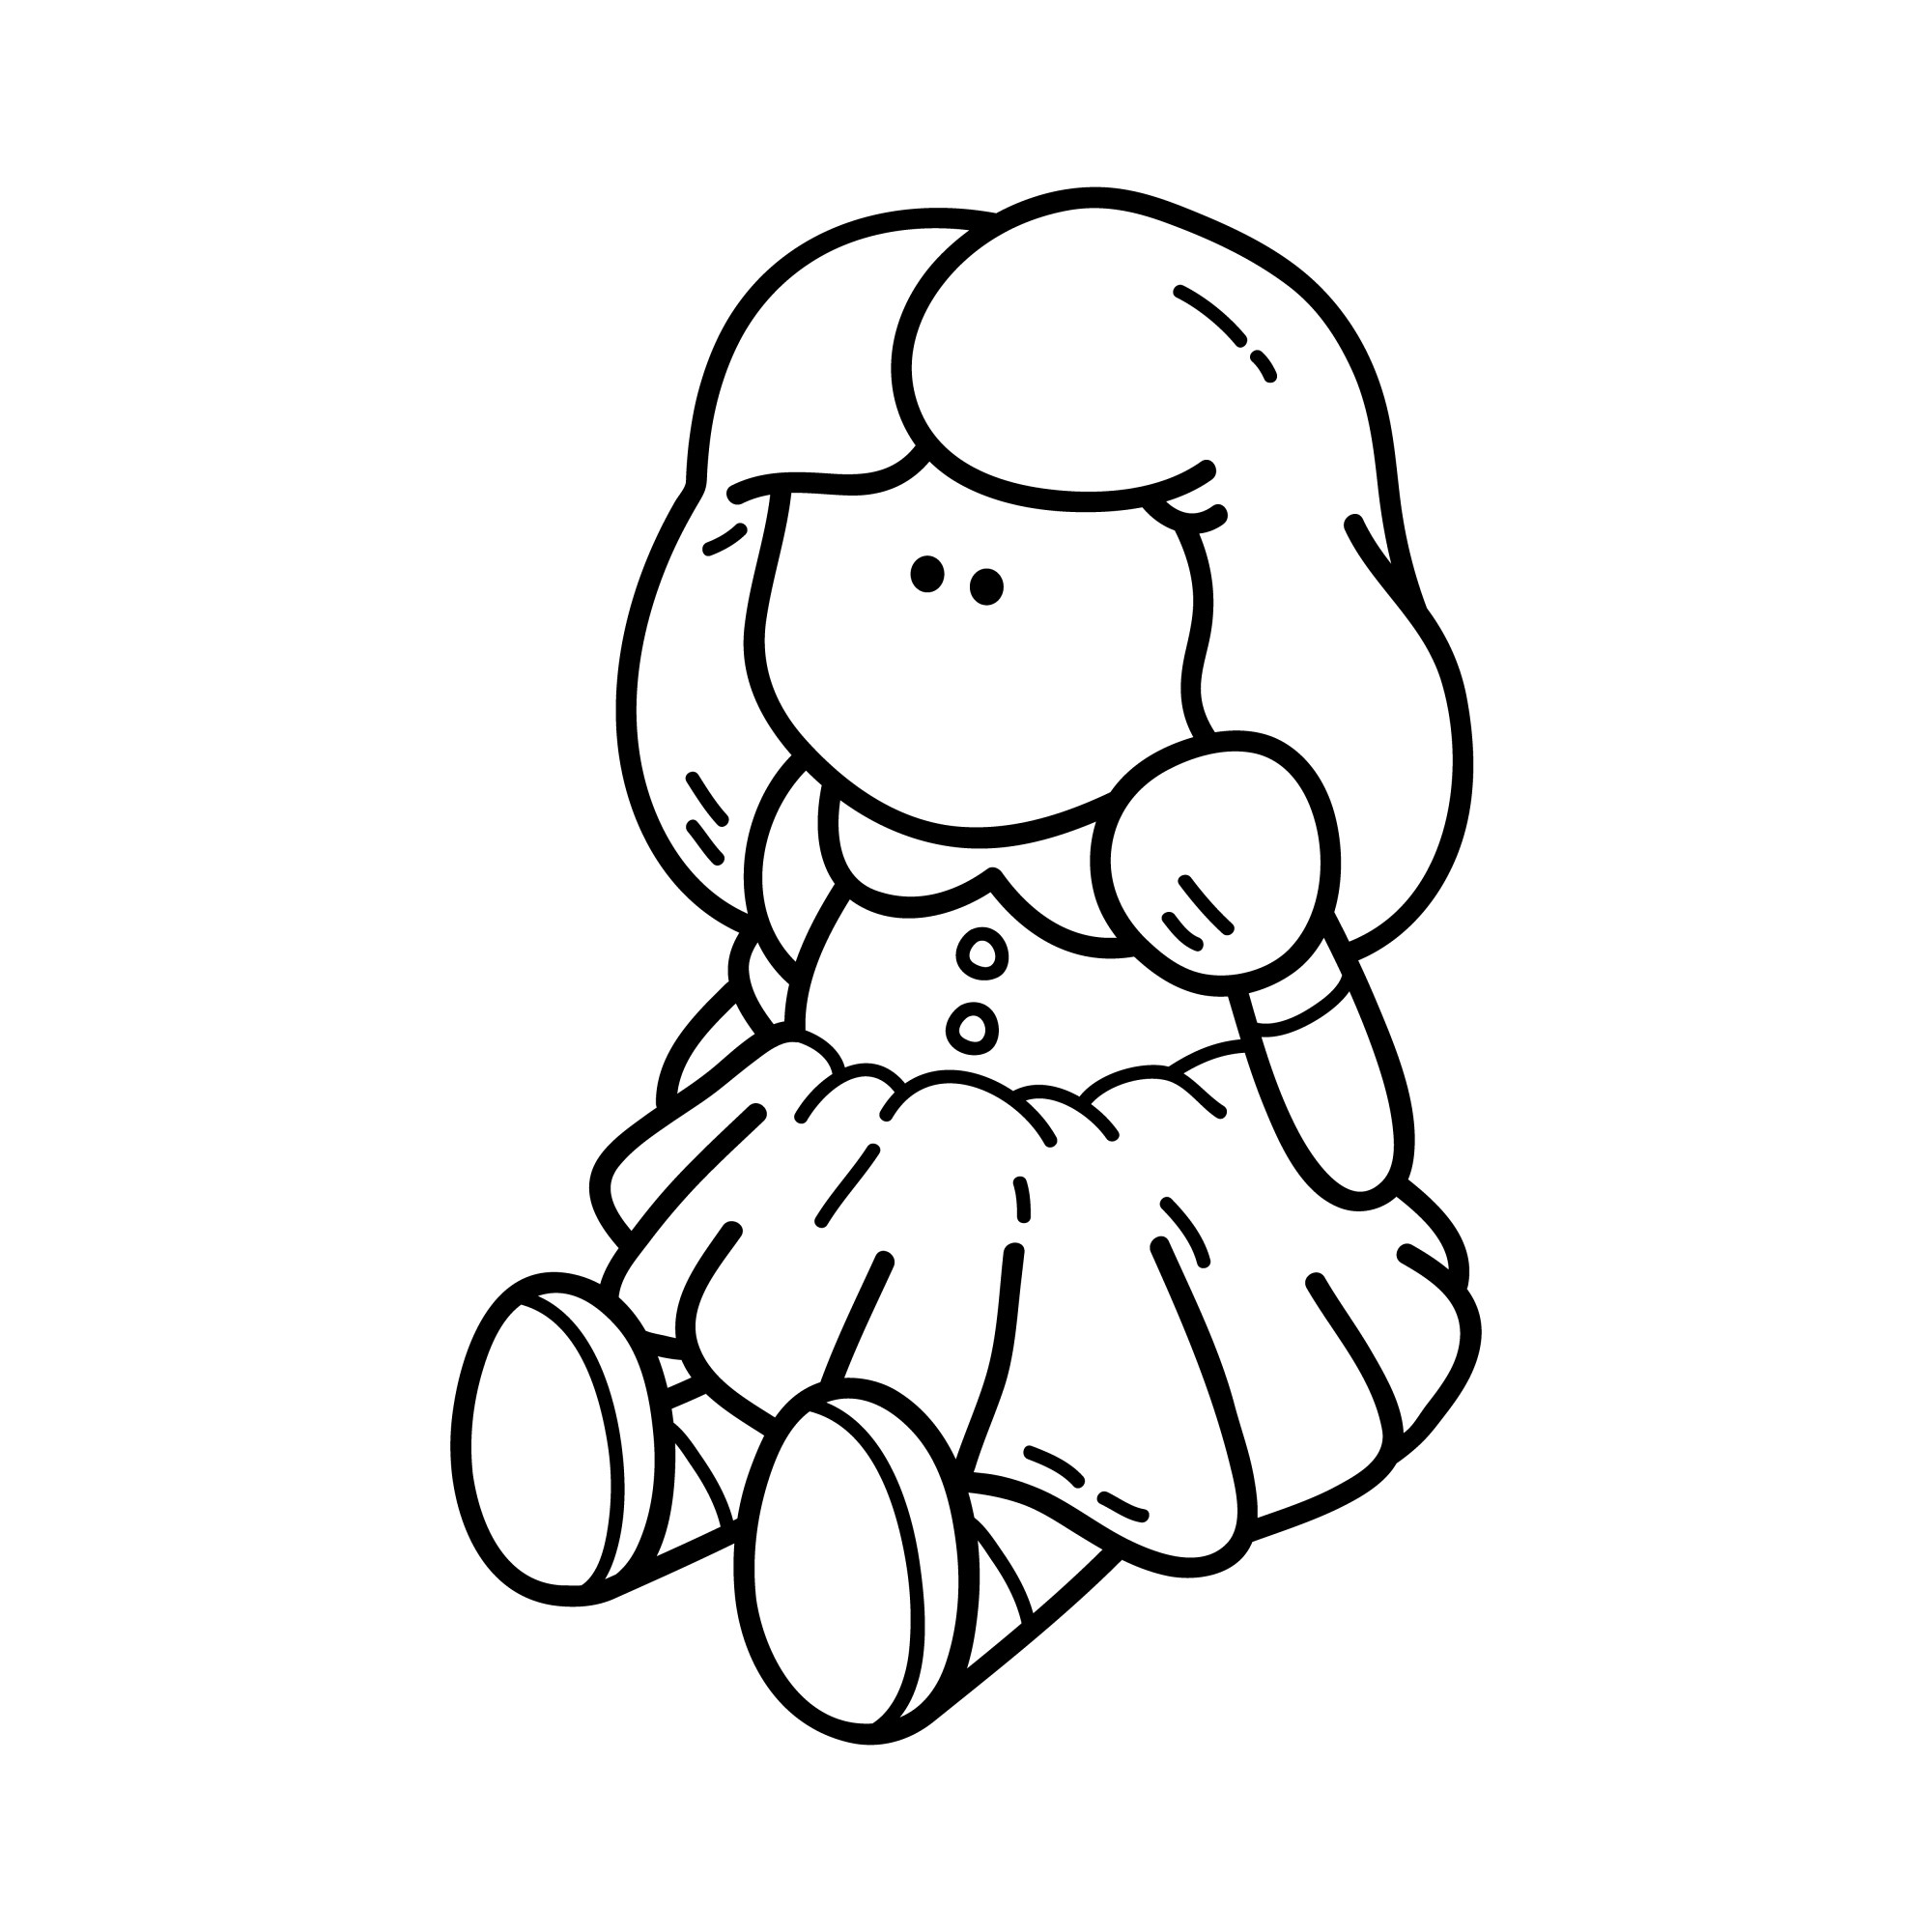 Раскраска для детей: сидячая кукла девочки в платье